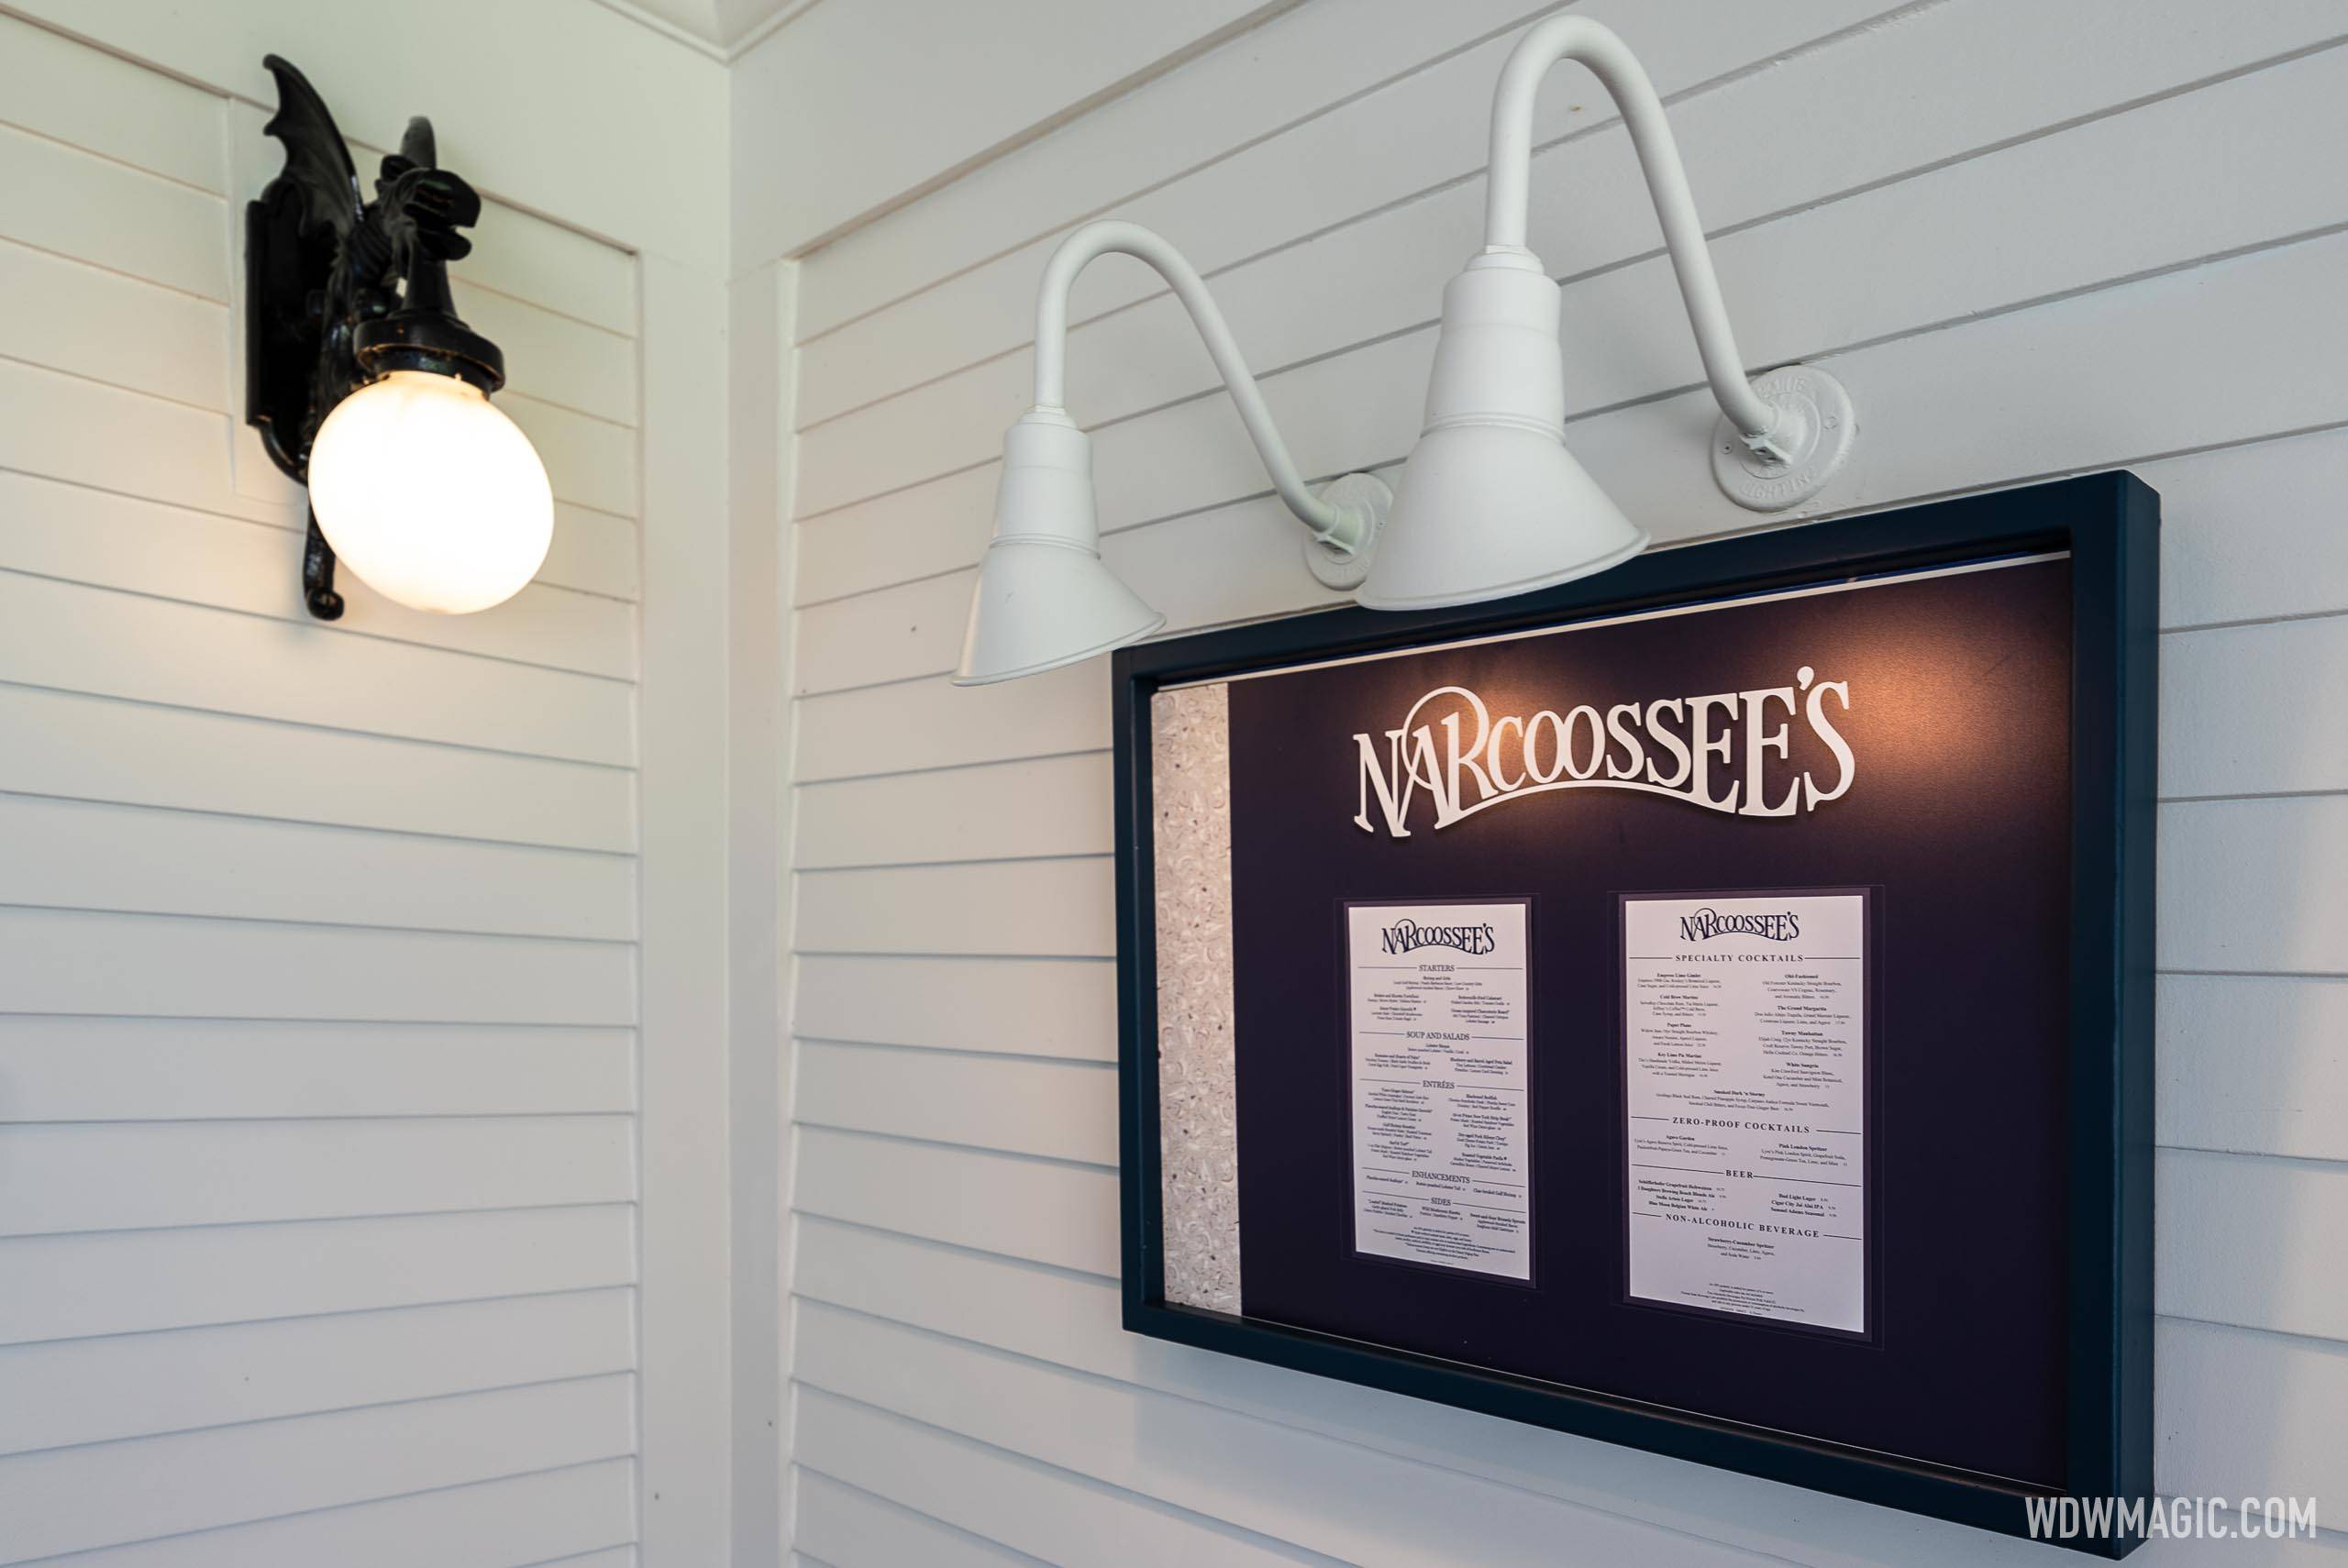 Narcoossee's entrance and menu board